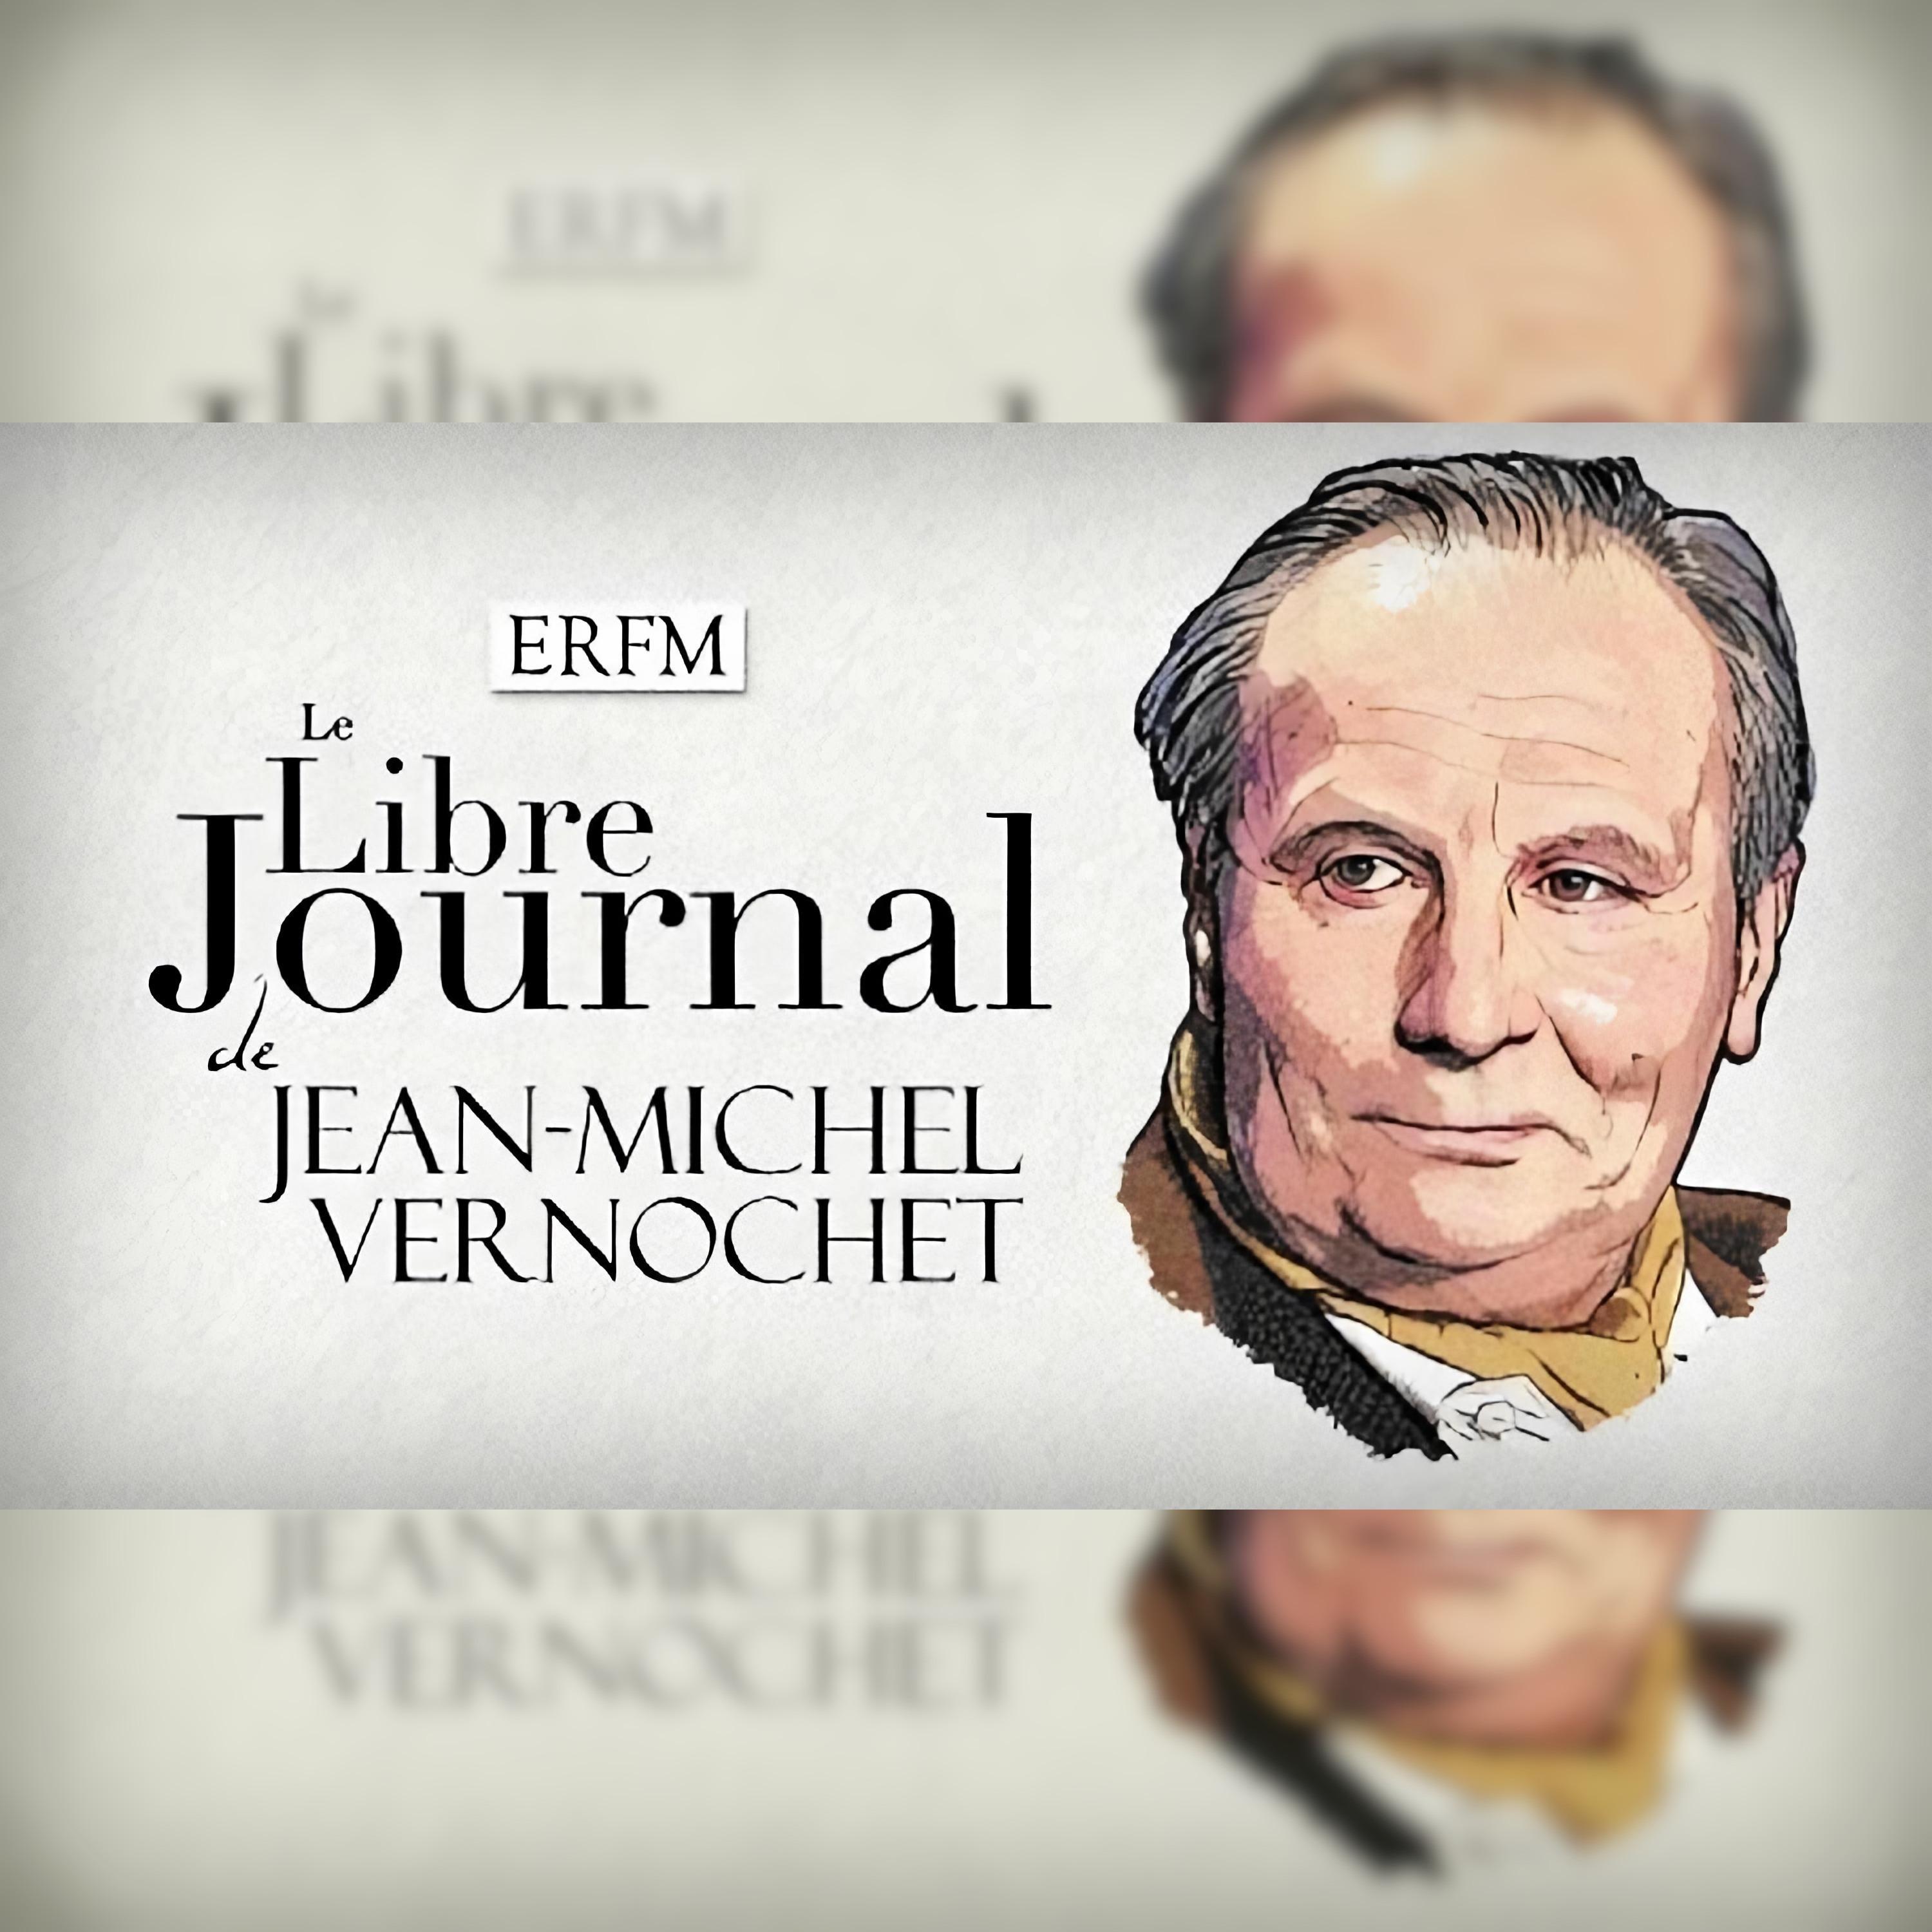 Le Libre Journal de Jean-Michel Vernochet